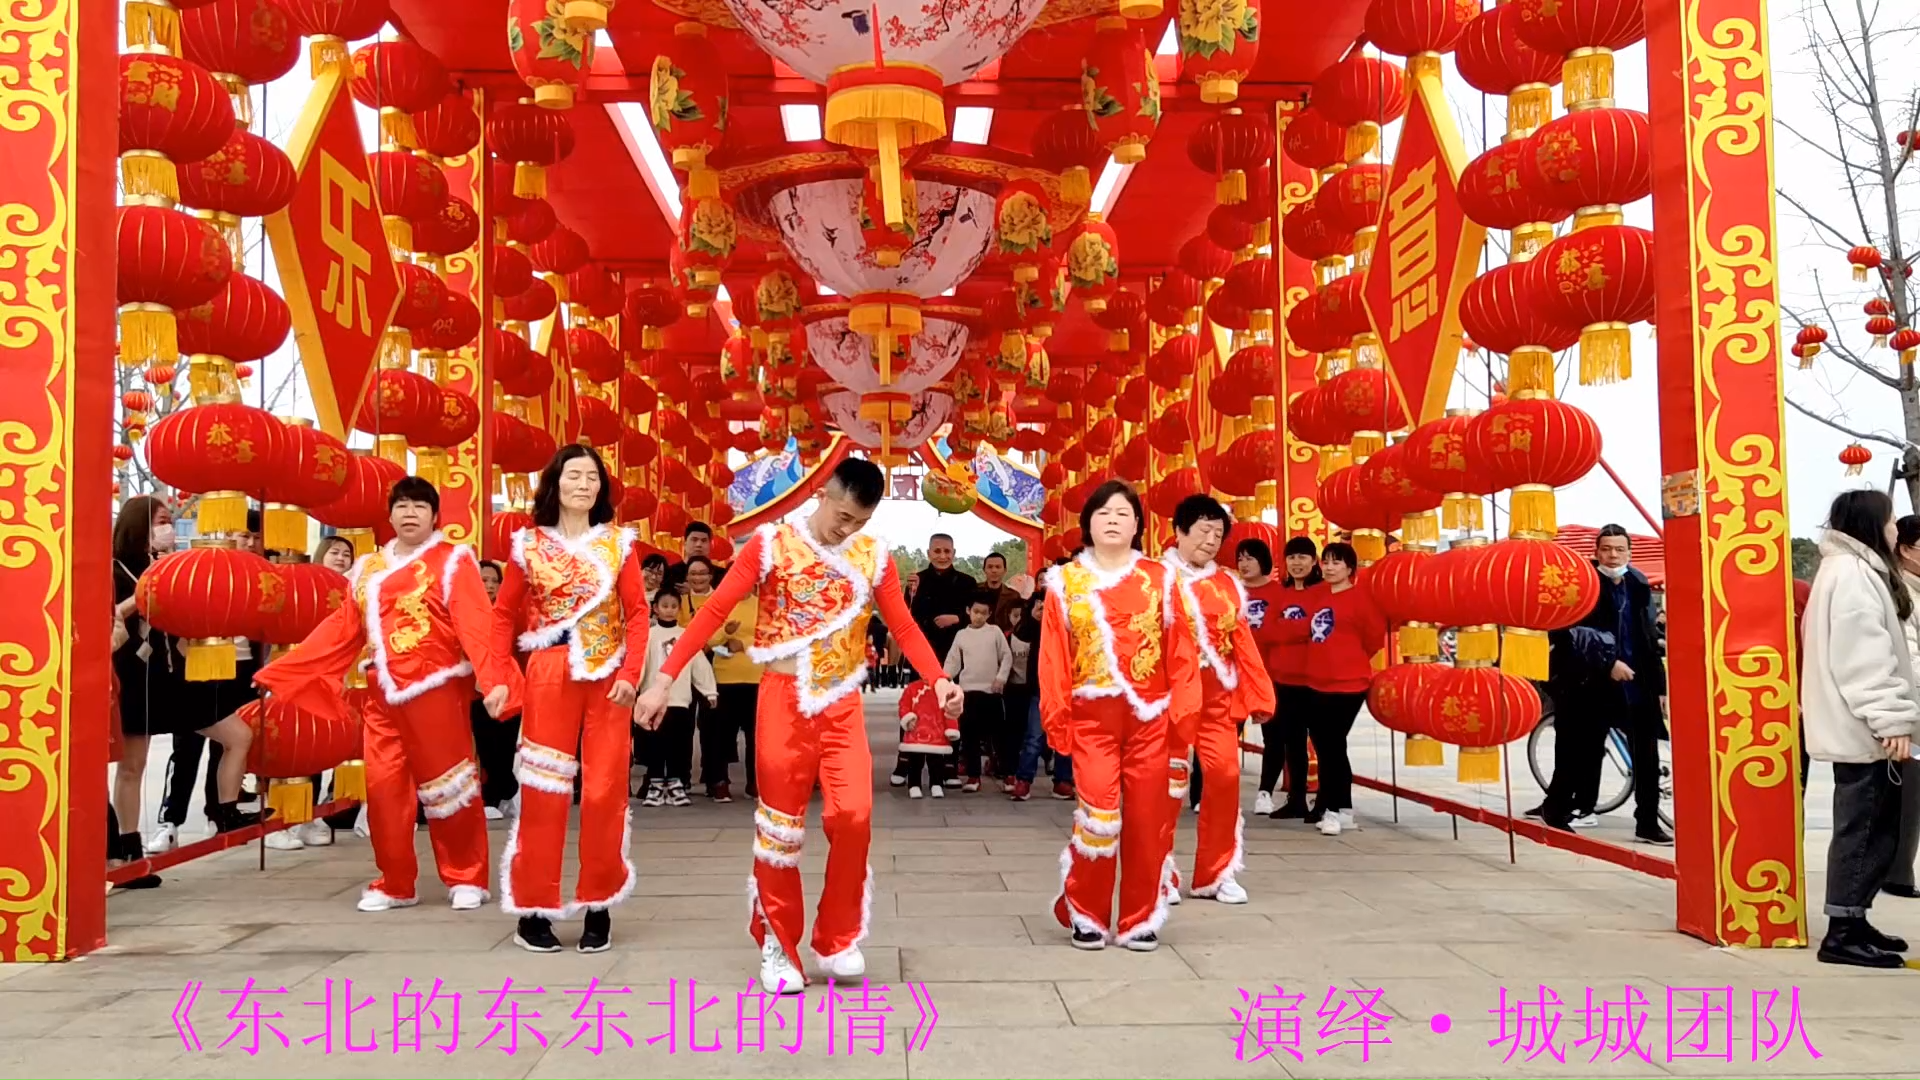 小哥团队演绎东北风格秧歌舞蹈,祝福全国人民新年快乐